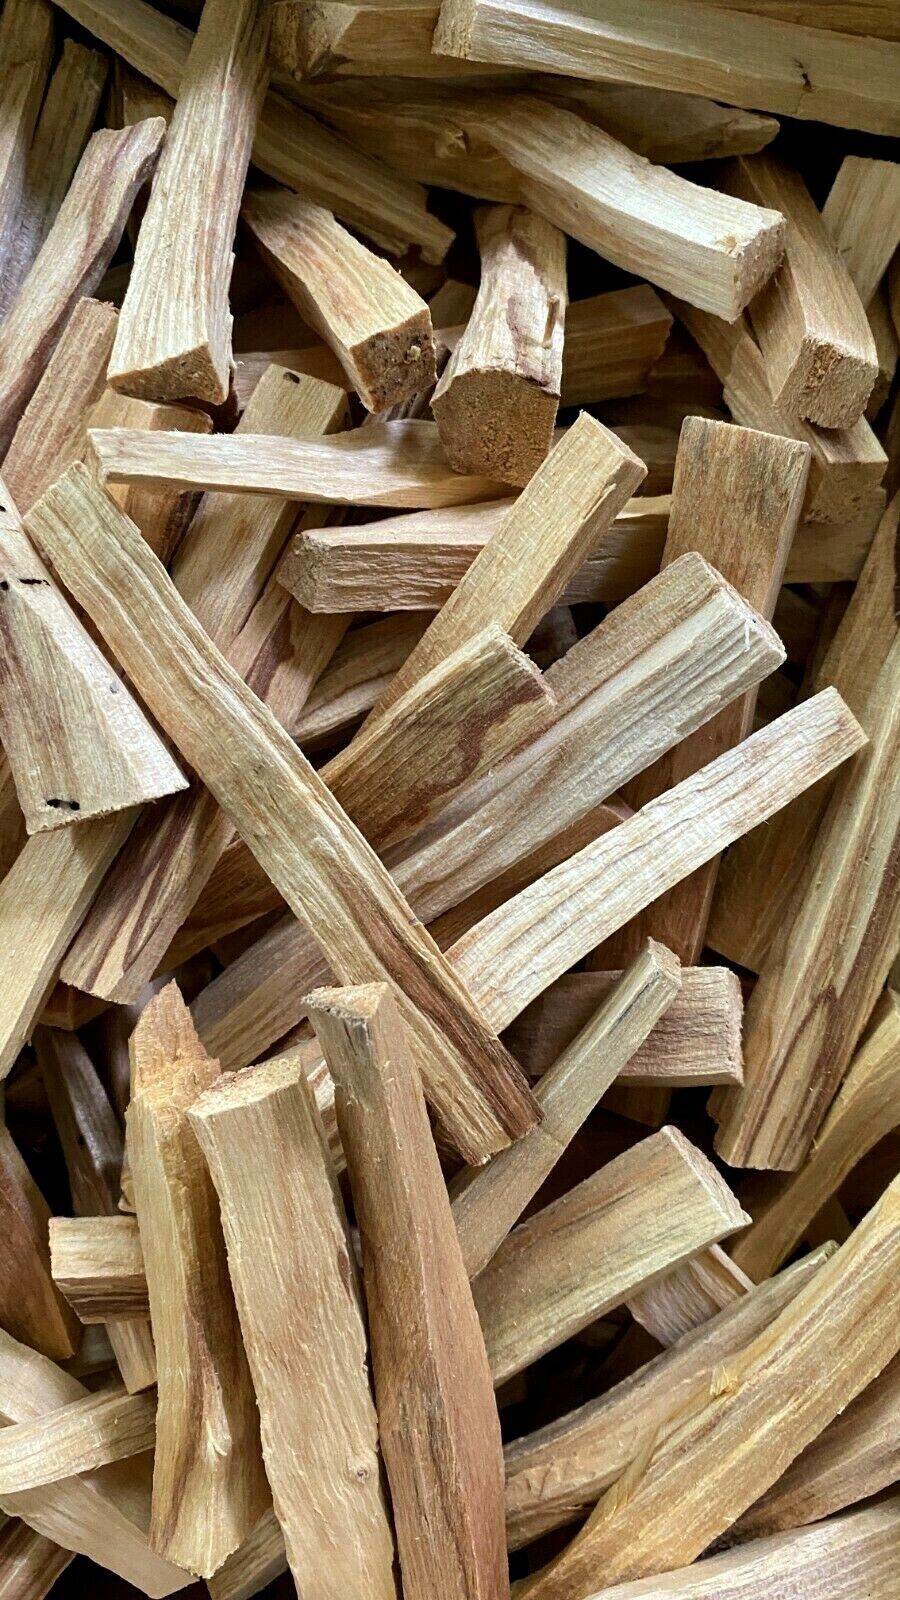 Palo Santo Holy Stick Wood Incense Smudge Sticks WHOLESALE BULK LOT - 25 Pieces